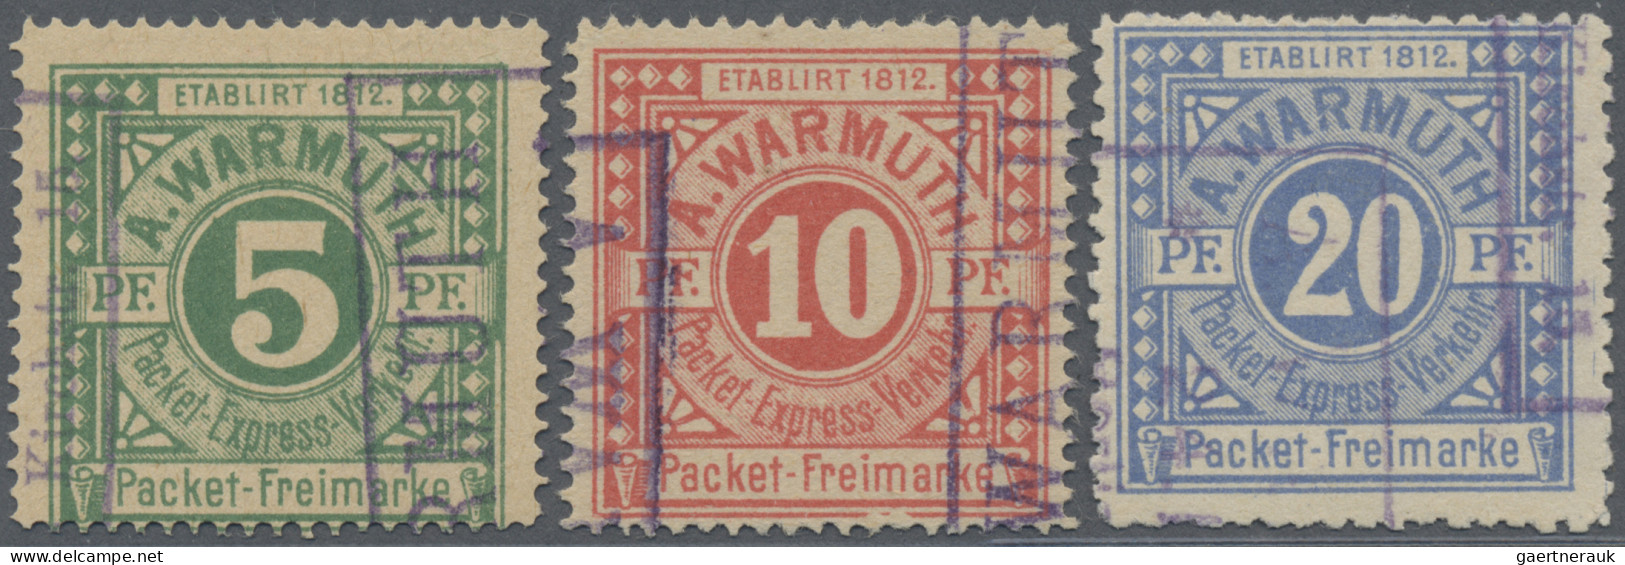 Deutsches Reich - Privatpost (Stadtpost): BERLIN: 1890 A. Warmuth Packet-Verkehr - Private & Lokale Post